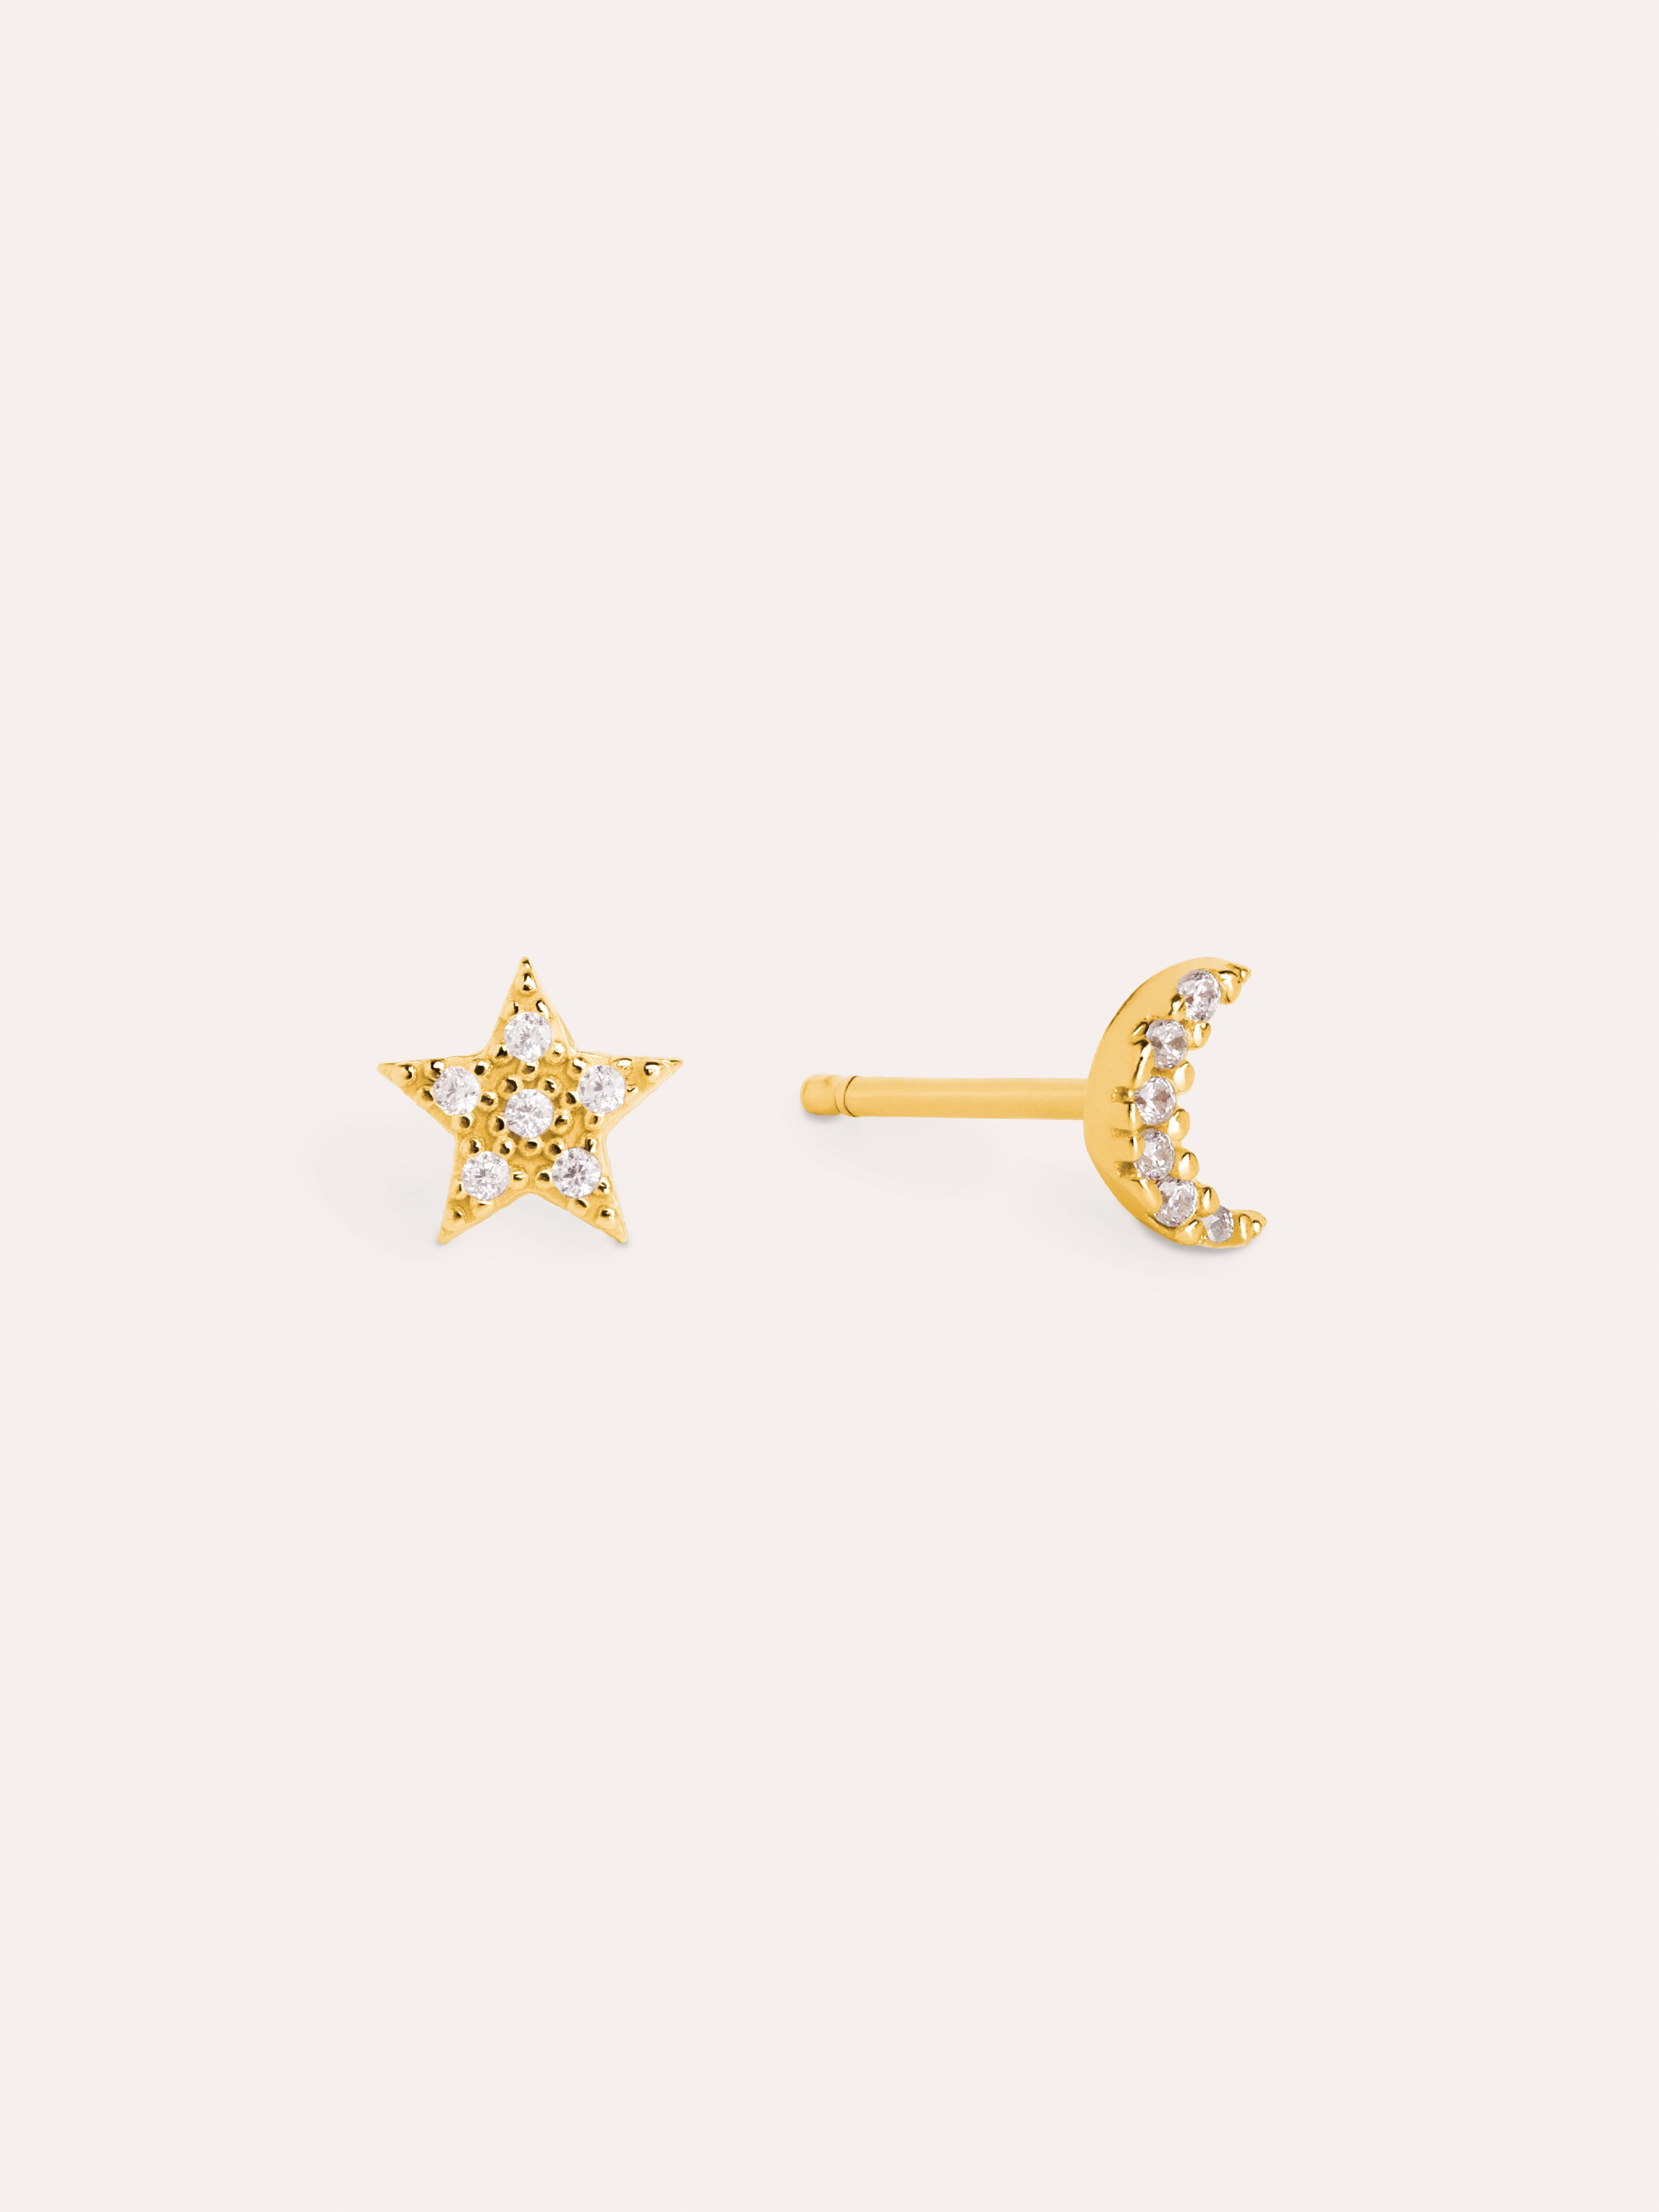 Moon & Star Gold Earrings